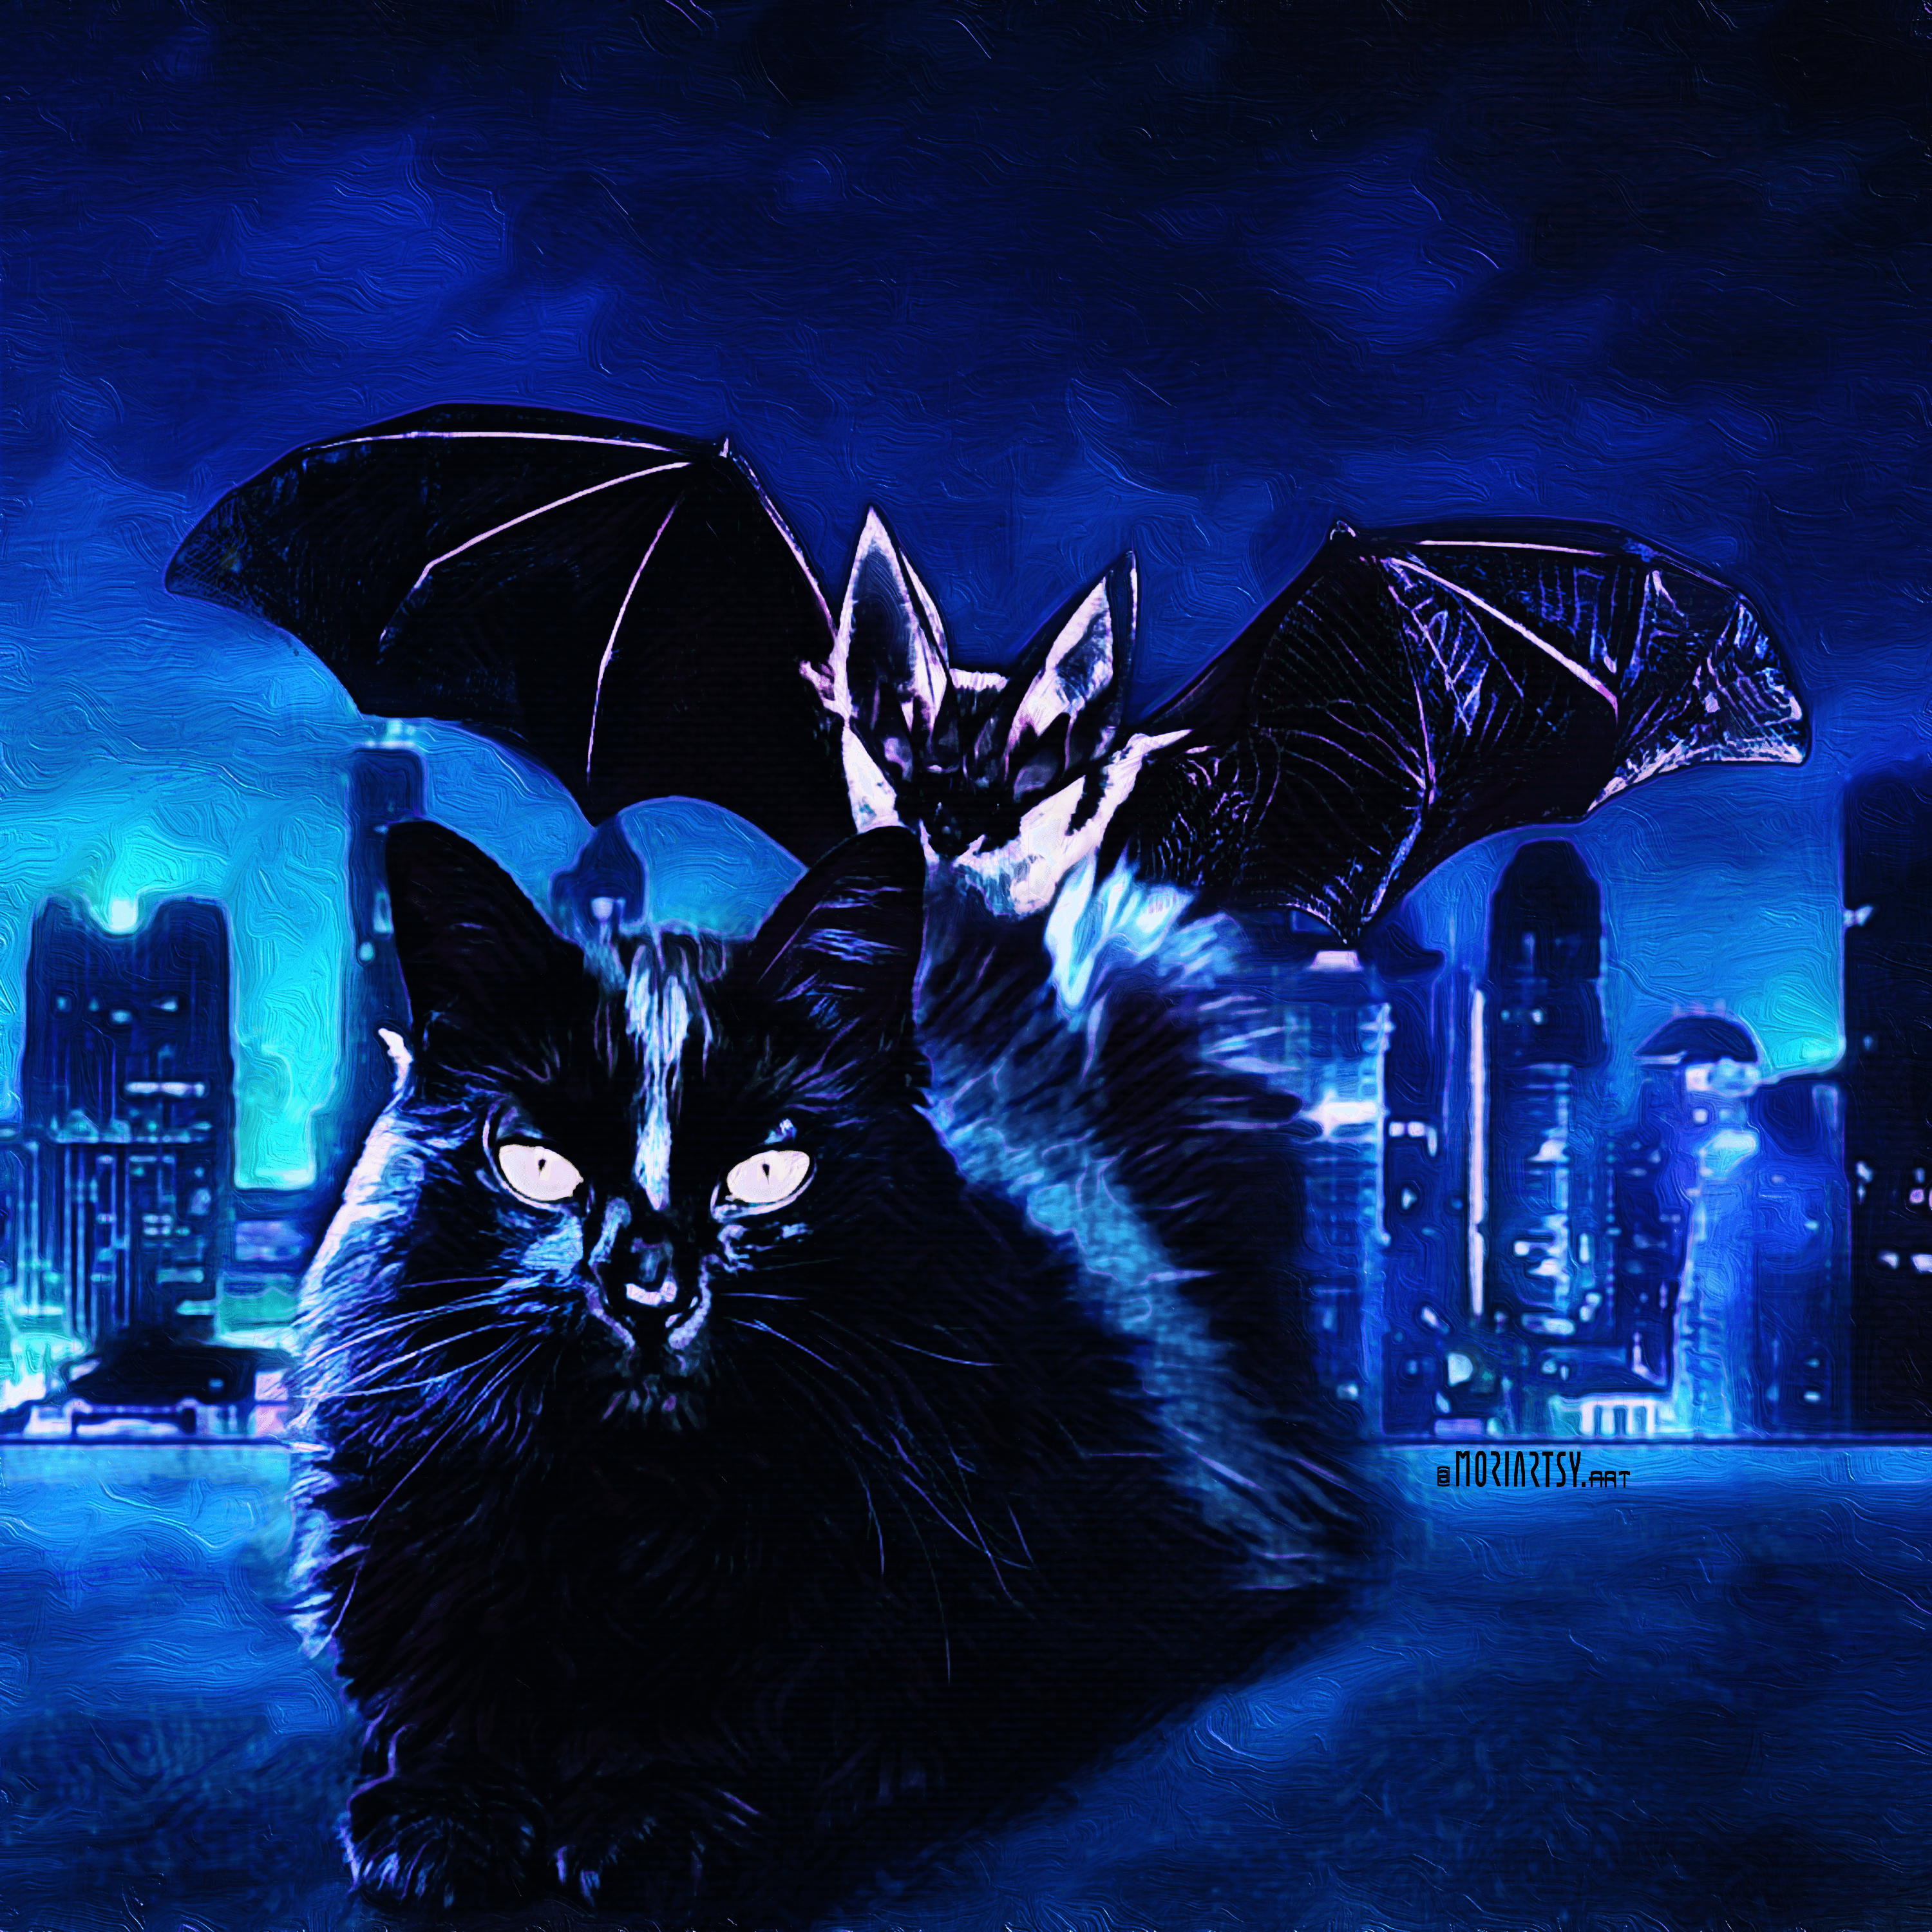 Bat On Cat, Get Over It - DAZE #77